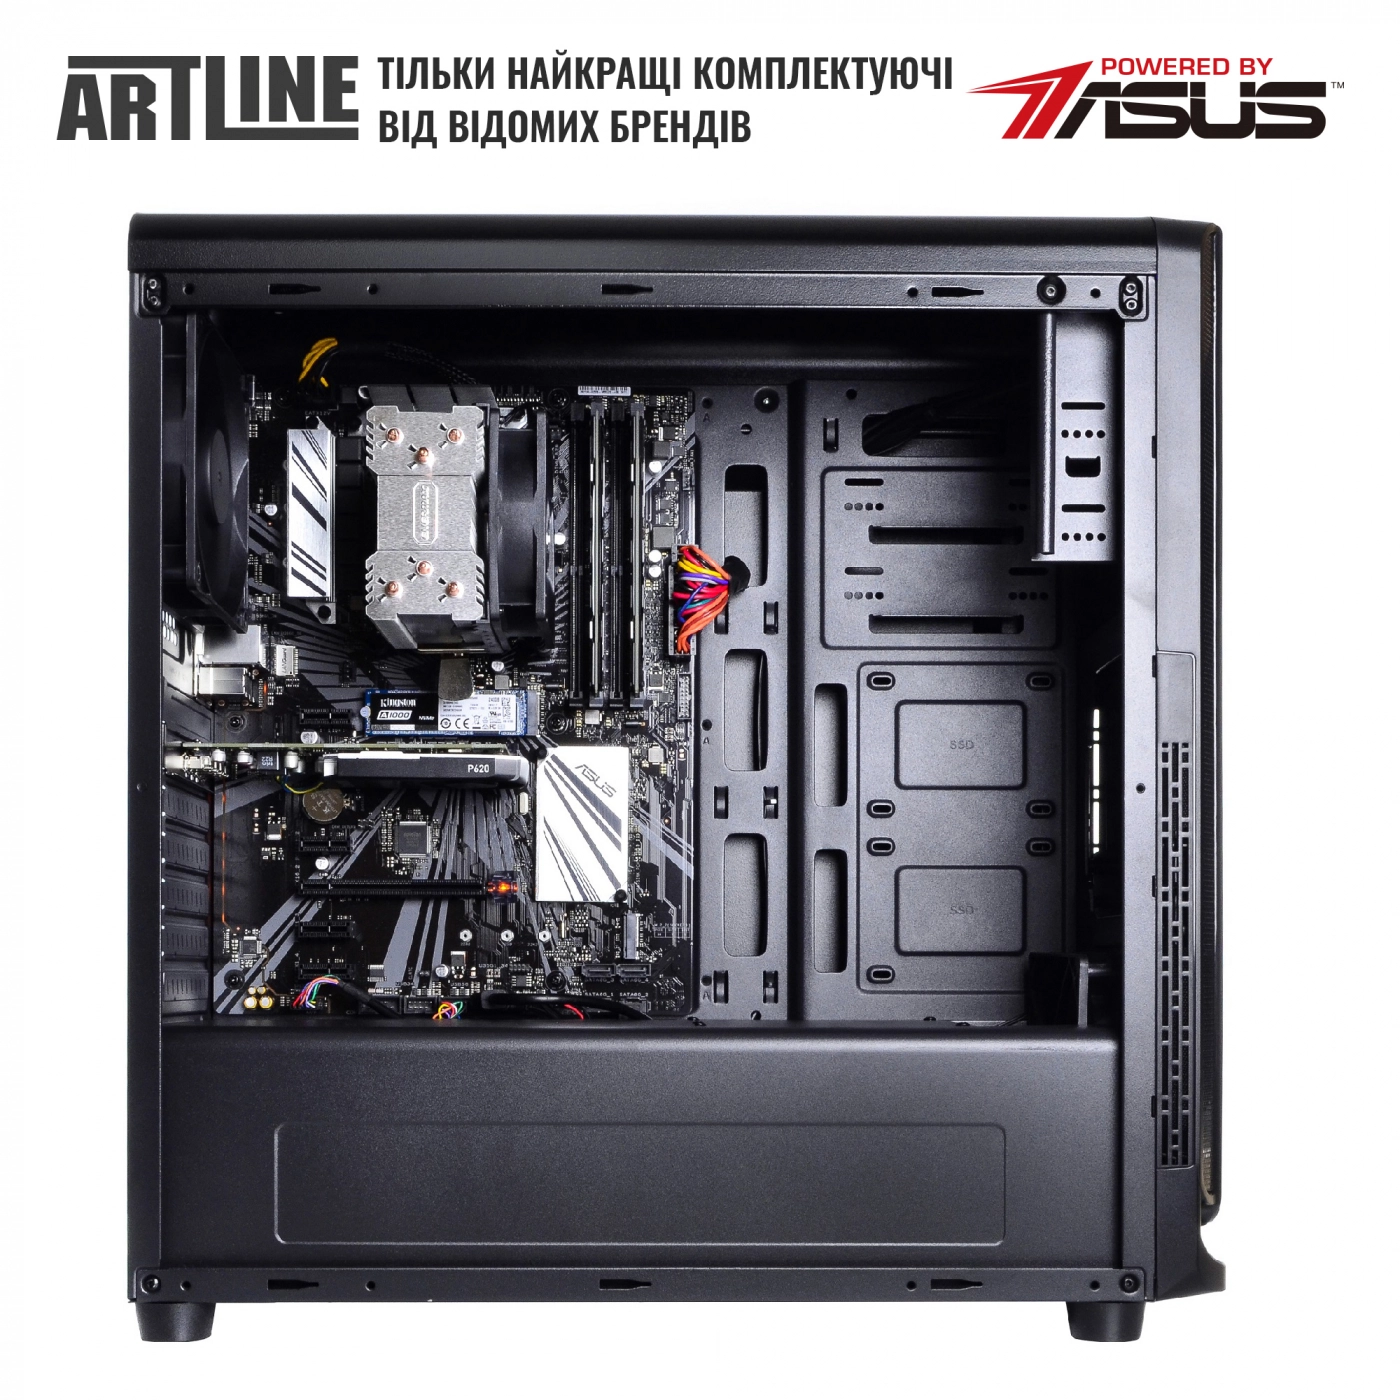 Купить Сервер ARTLINE Business T15v14 - фото 5